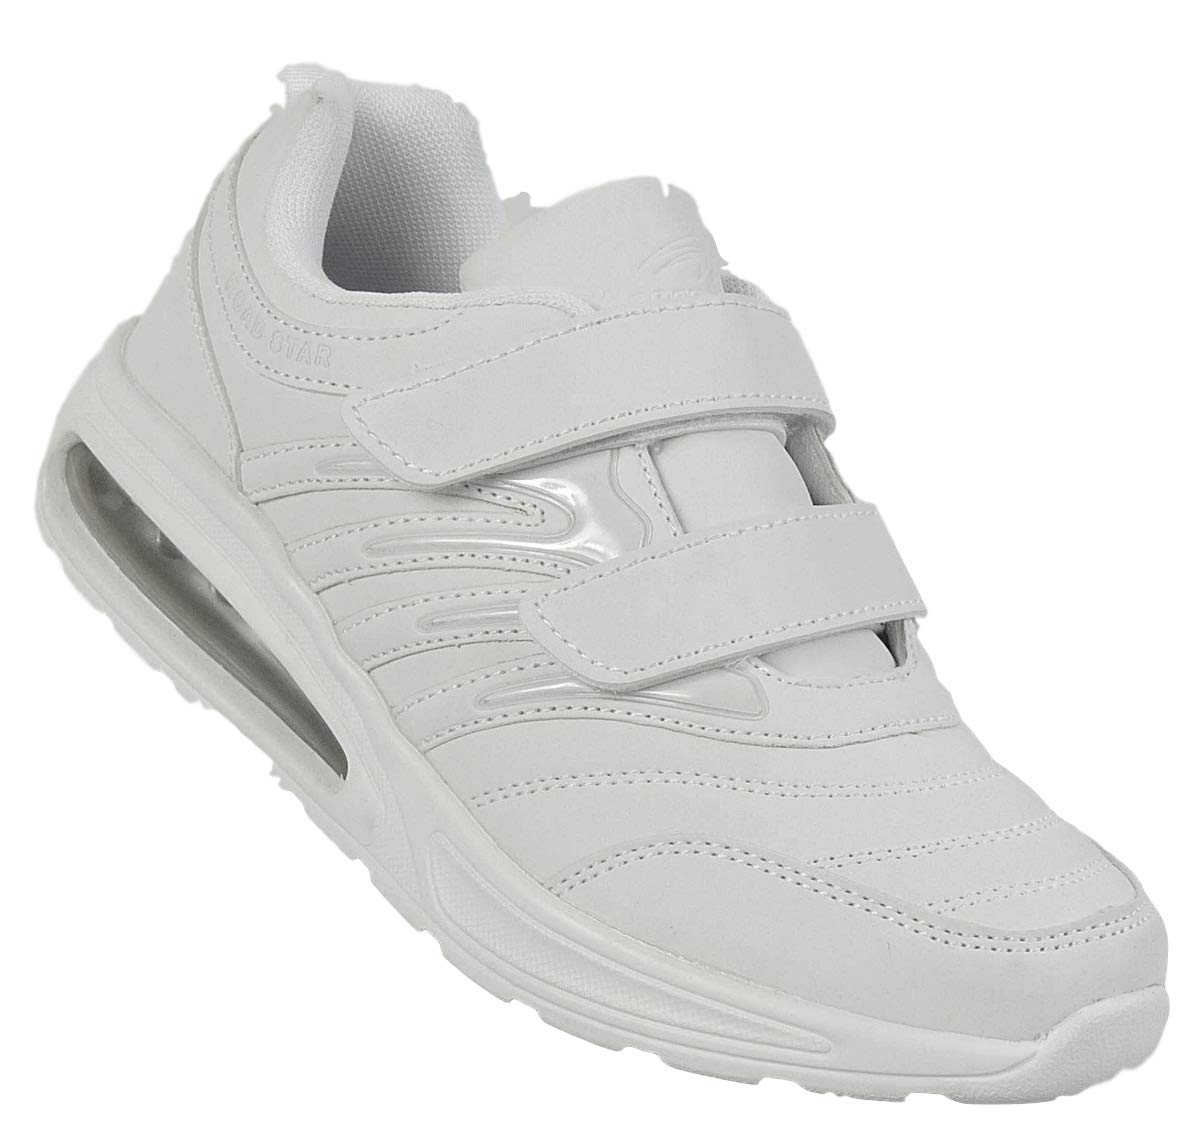 Bootsland Unisex Klett Sportschuhe Sneaker Turnschuhe Freizeitschuhe 001, Schuhgröße:38, Farbe:Weiß